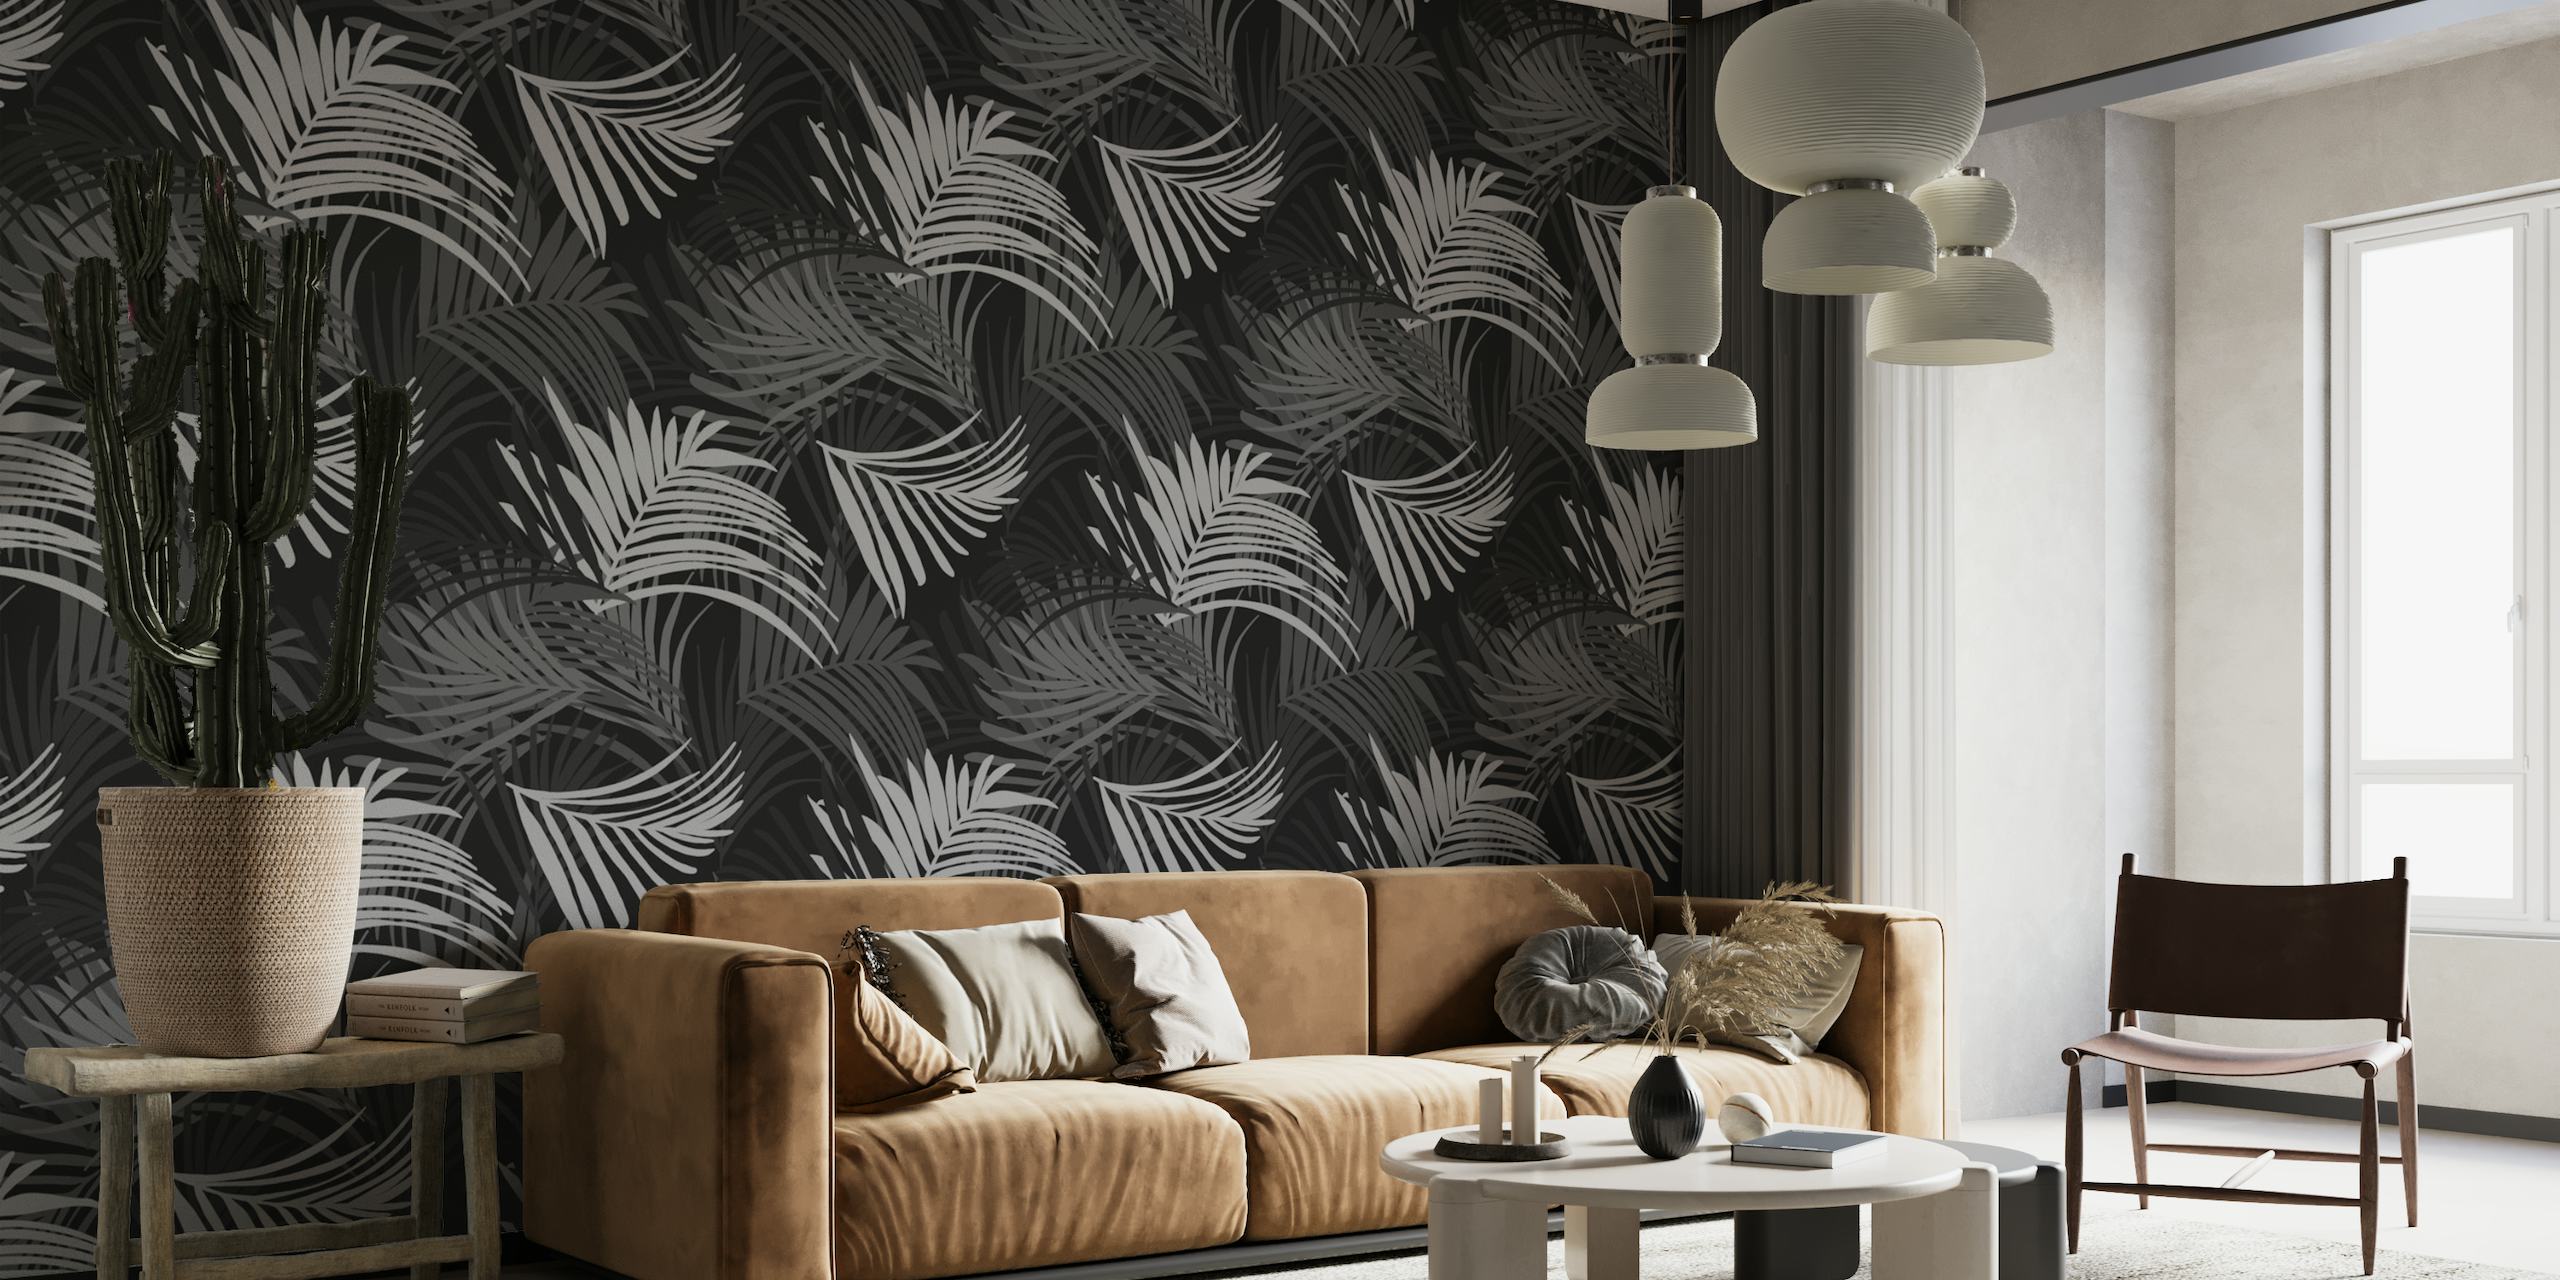 Fotomural con estampado de hojas de palmeras tropicales en blanco y negro, perfecto para crear una serena temática de jungla.